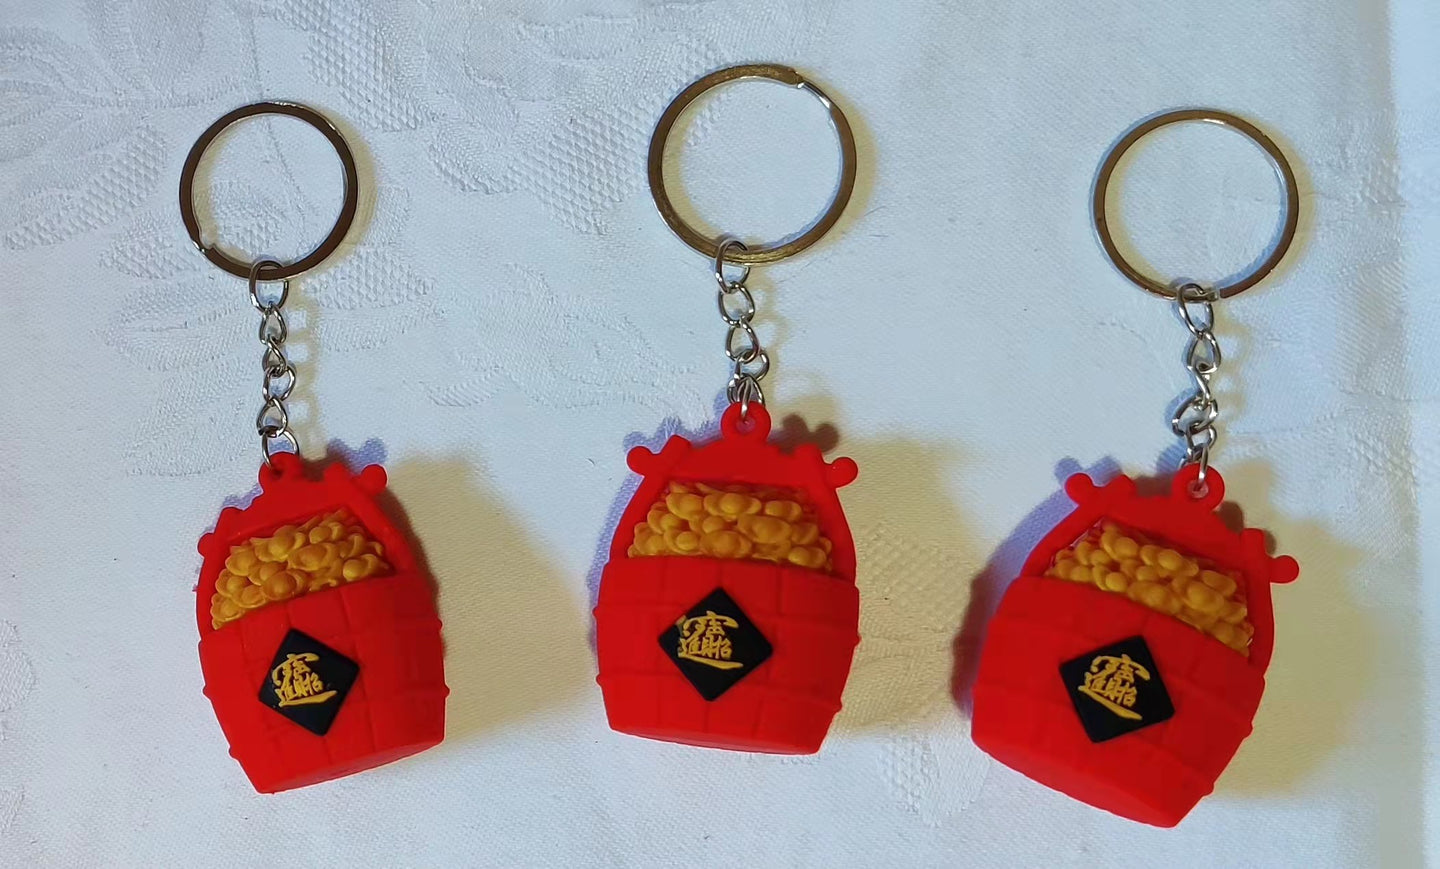 Porte-clés seau en caoutchouc (3,80 x 5,00 cm)